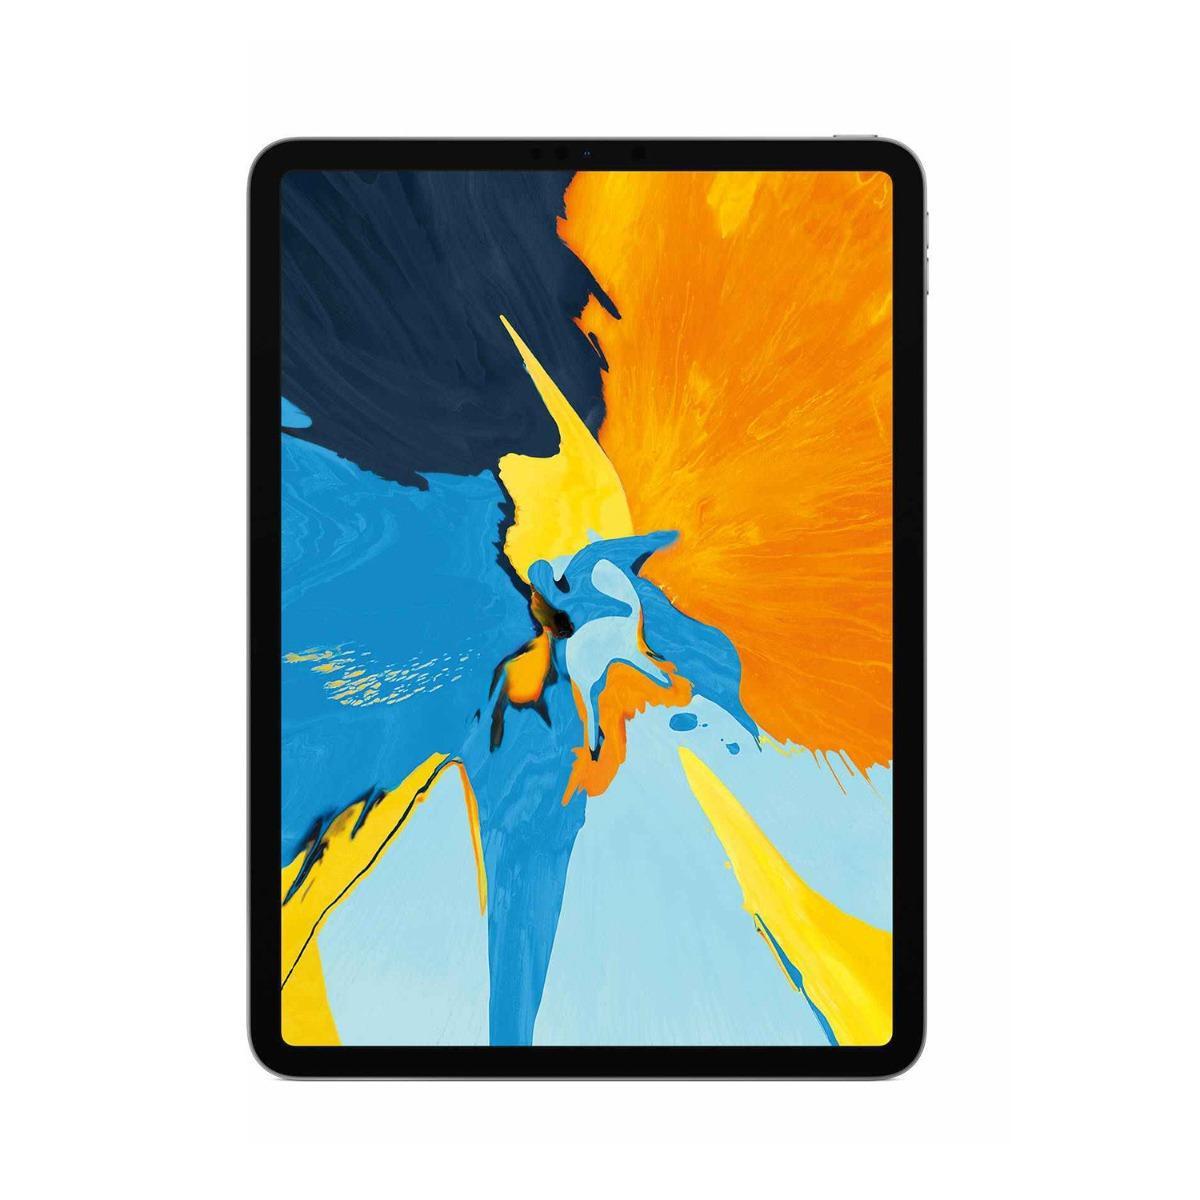 iPad Pro 11" (2018) - WiFi + 4G - Recondicionado